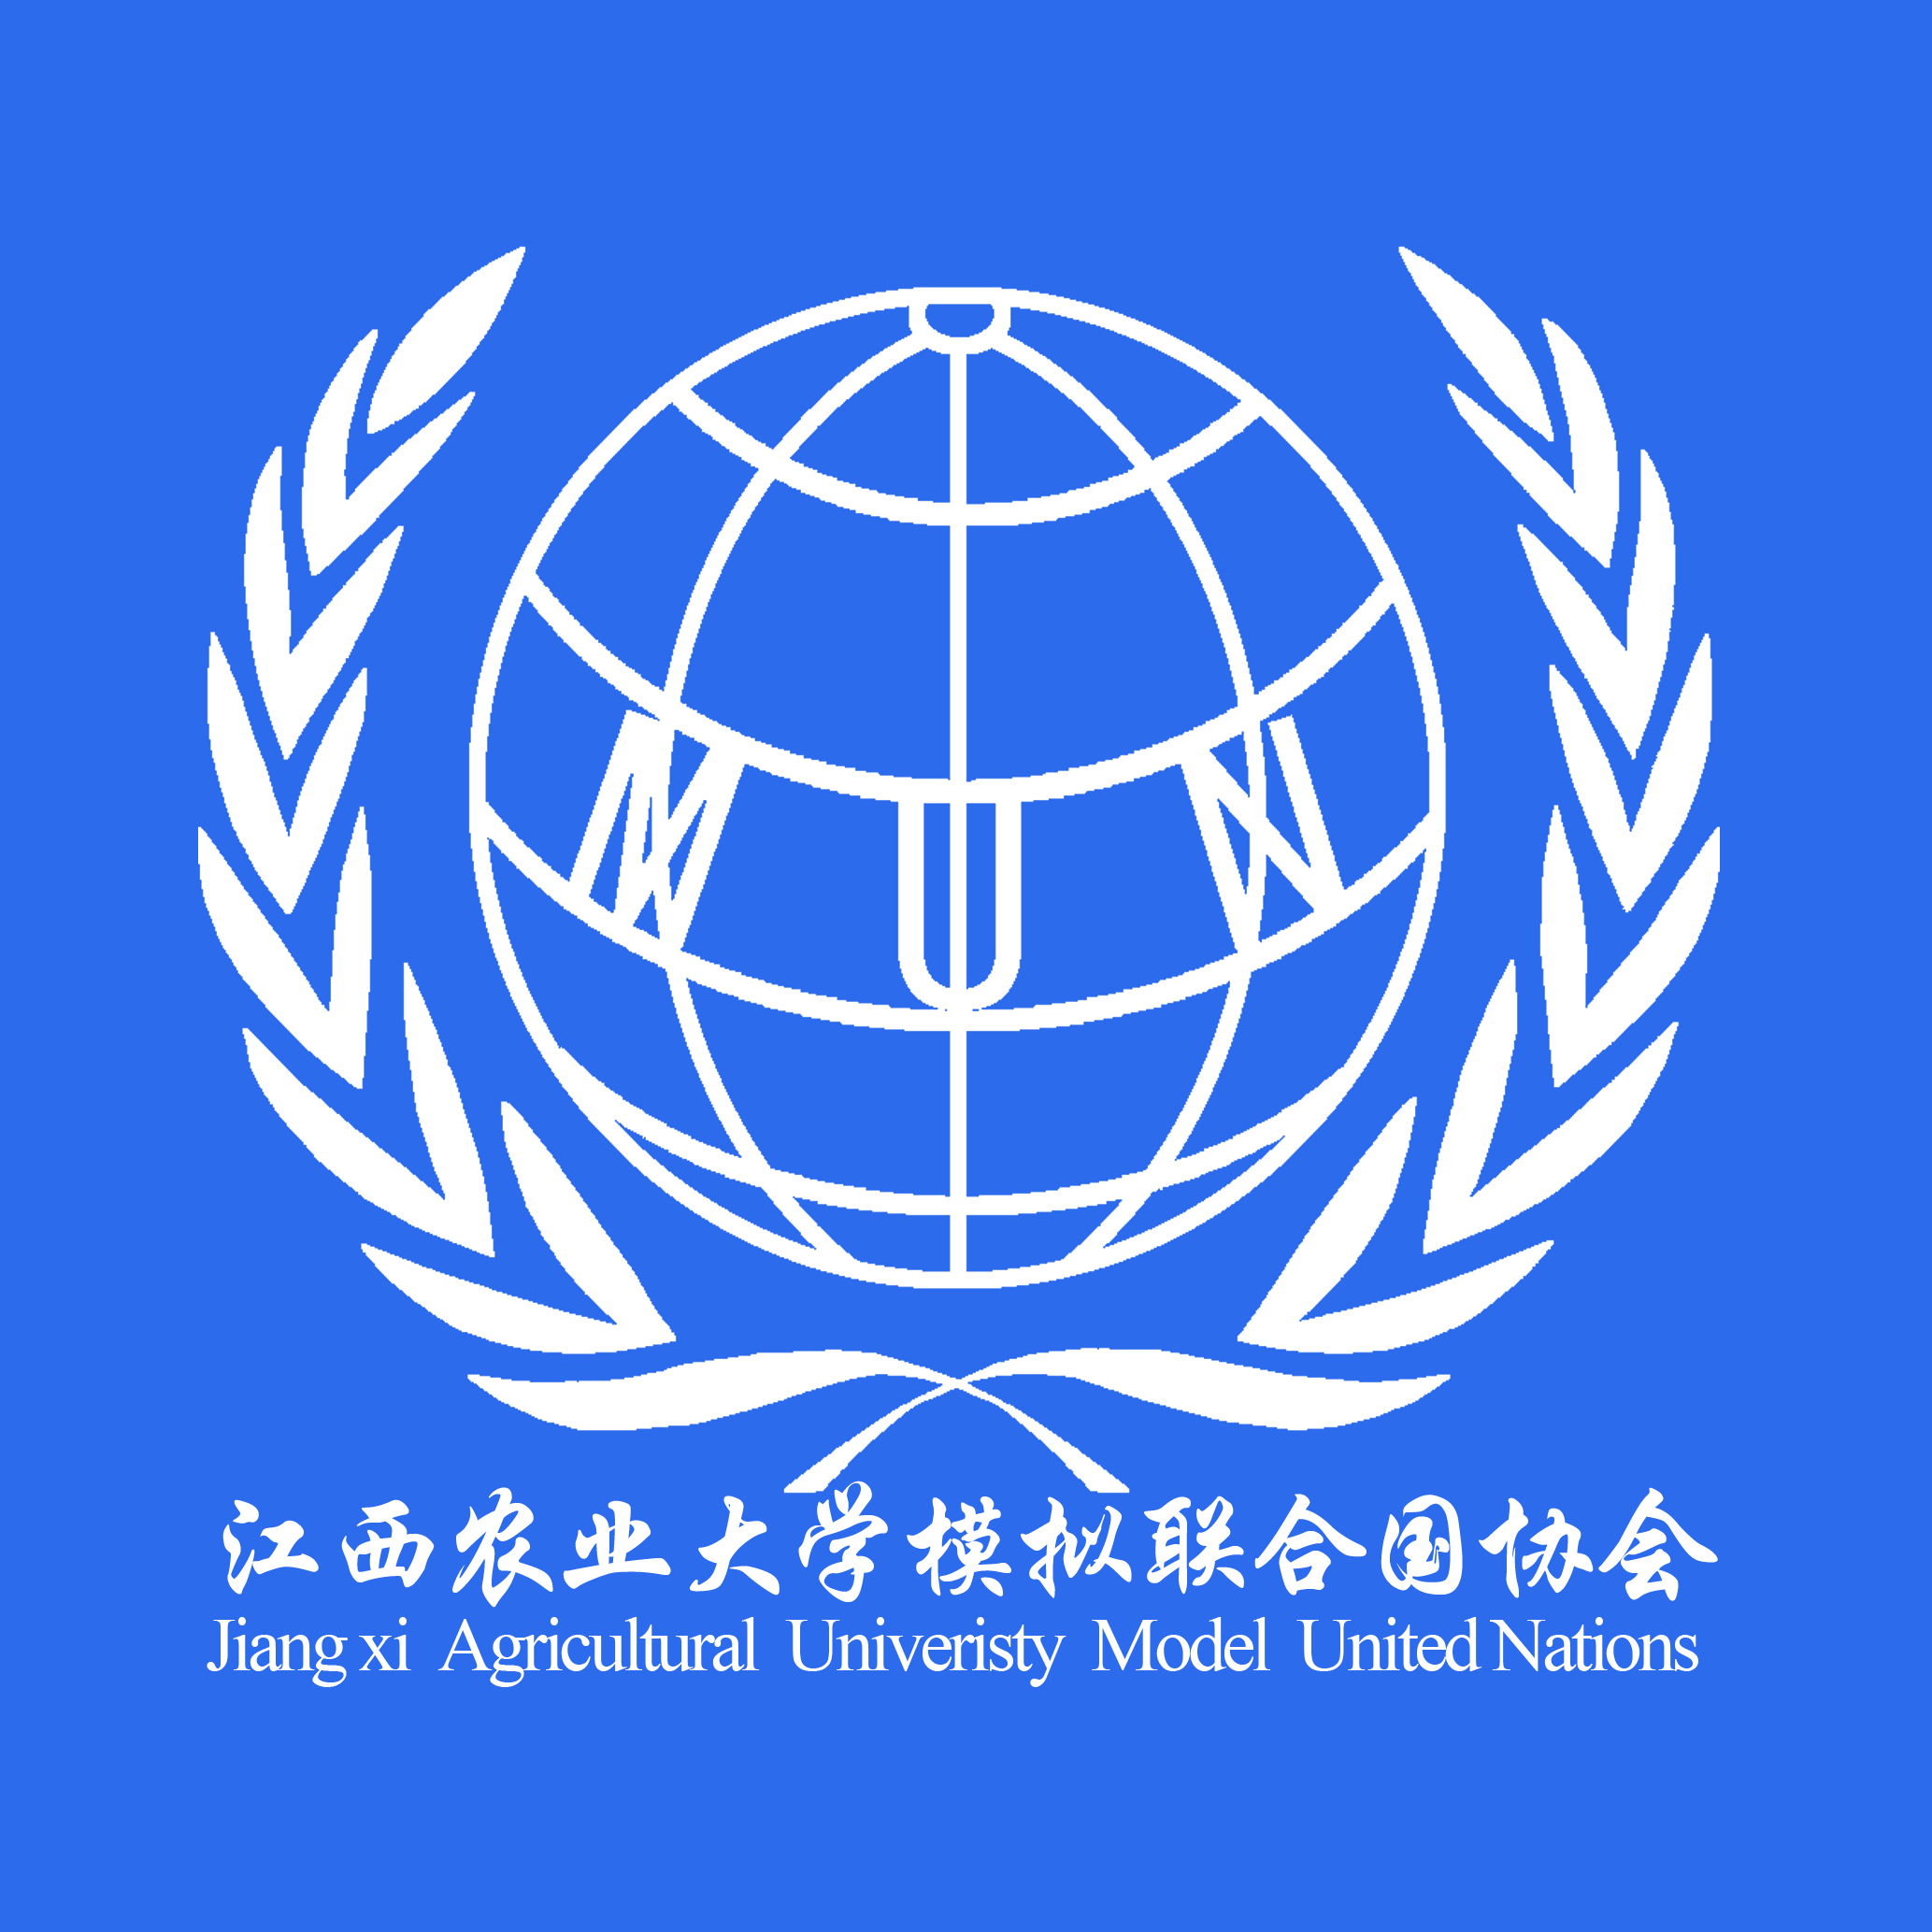 江西農業大學模擬聯合國協會